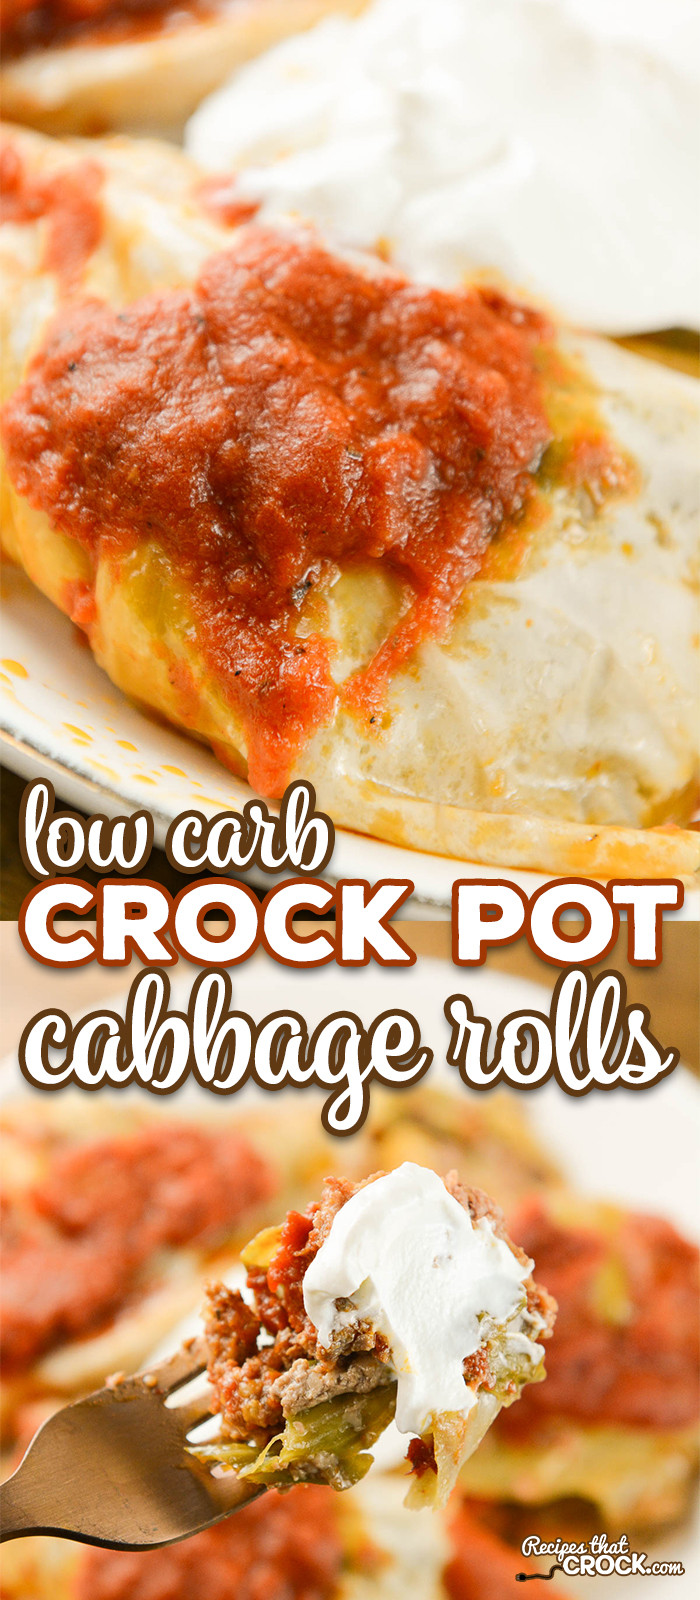 Best Low Carb Crock Pot Recipes
 Crock Pot Cabbage Rolls Recipes That Crock